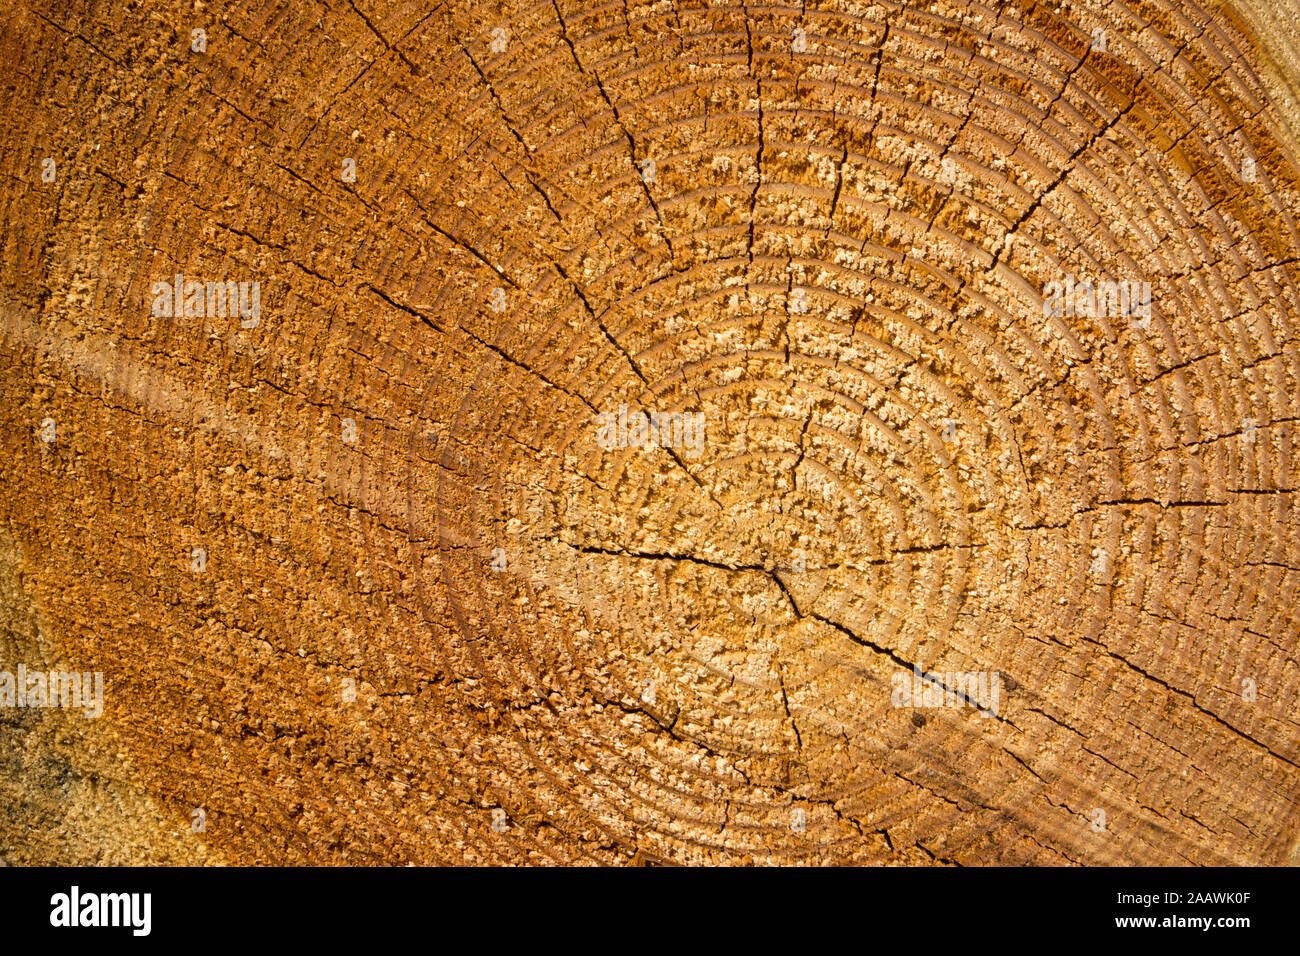 Full frame shot of tree stump Stock Photo